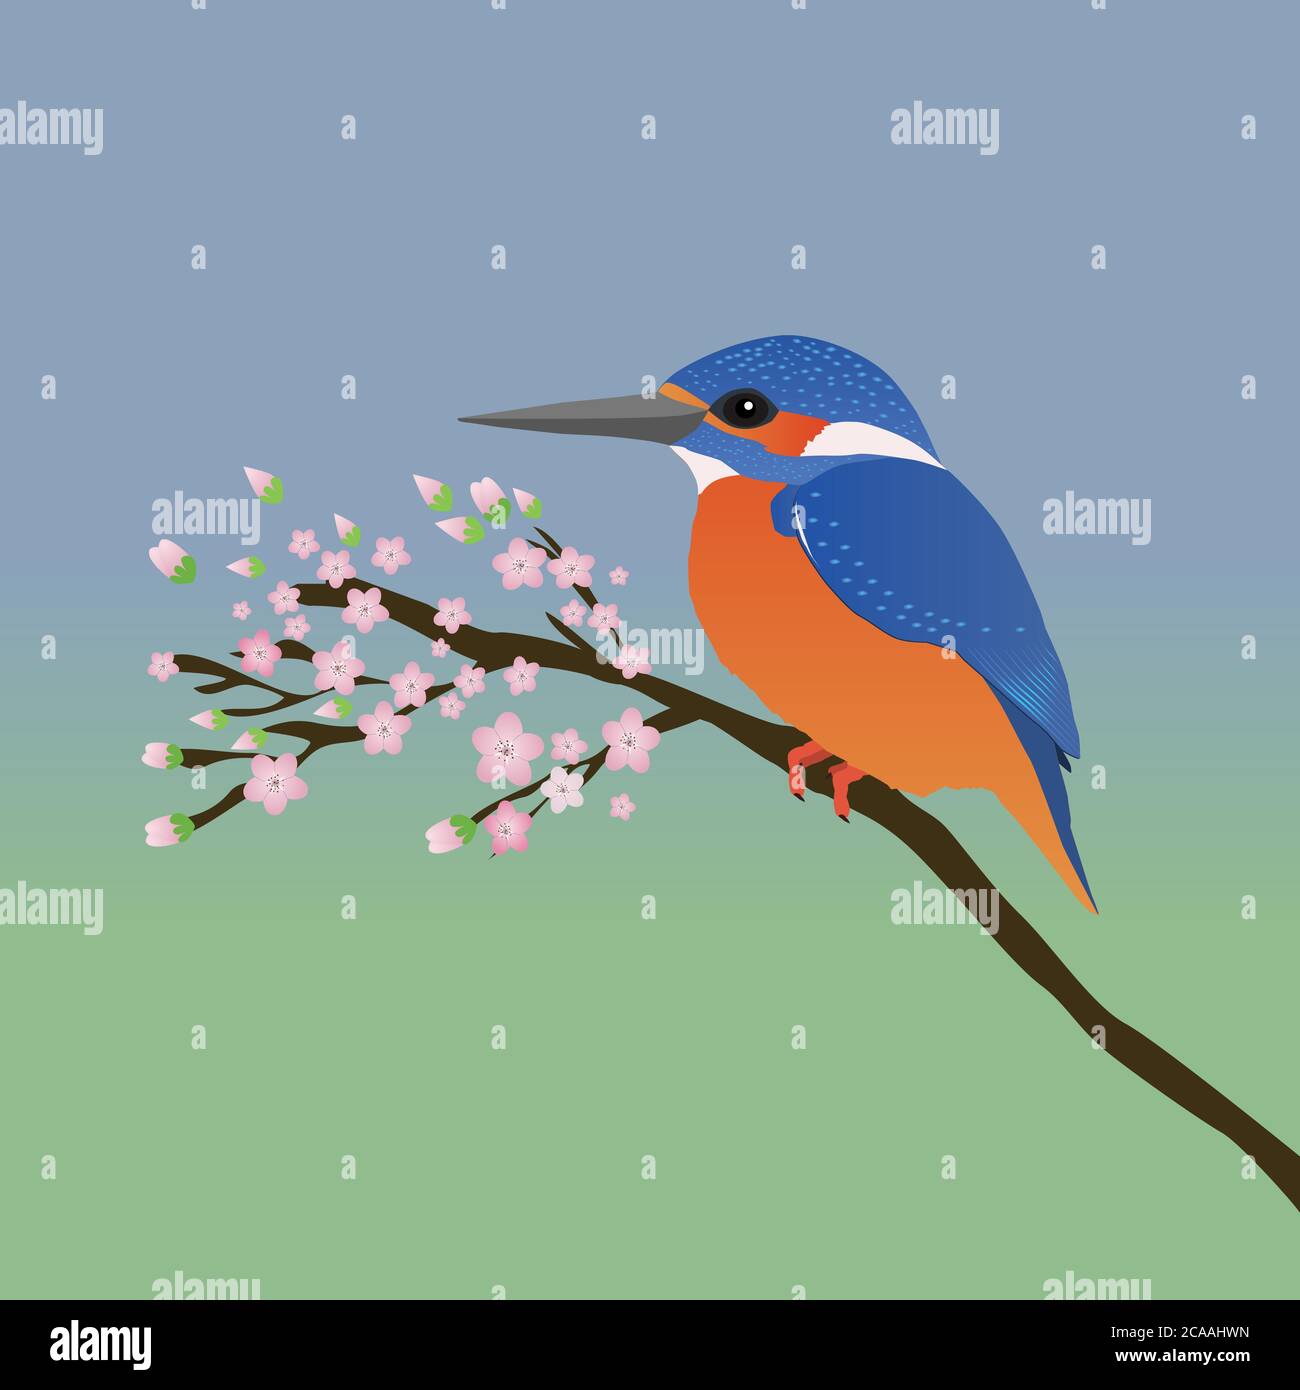 Un vettore digitale che si disegna in di un kingfisher. Il Martin pescatore si siede tranquillamente su un ramo con fiore rosa lo sfondo è un gradiente blu verde Illustrazione Vettoriale